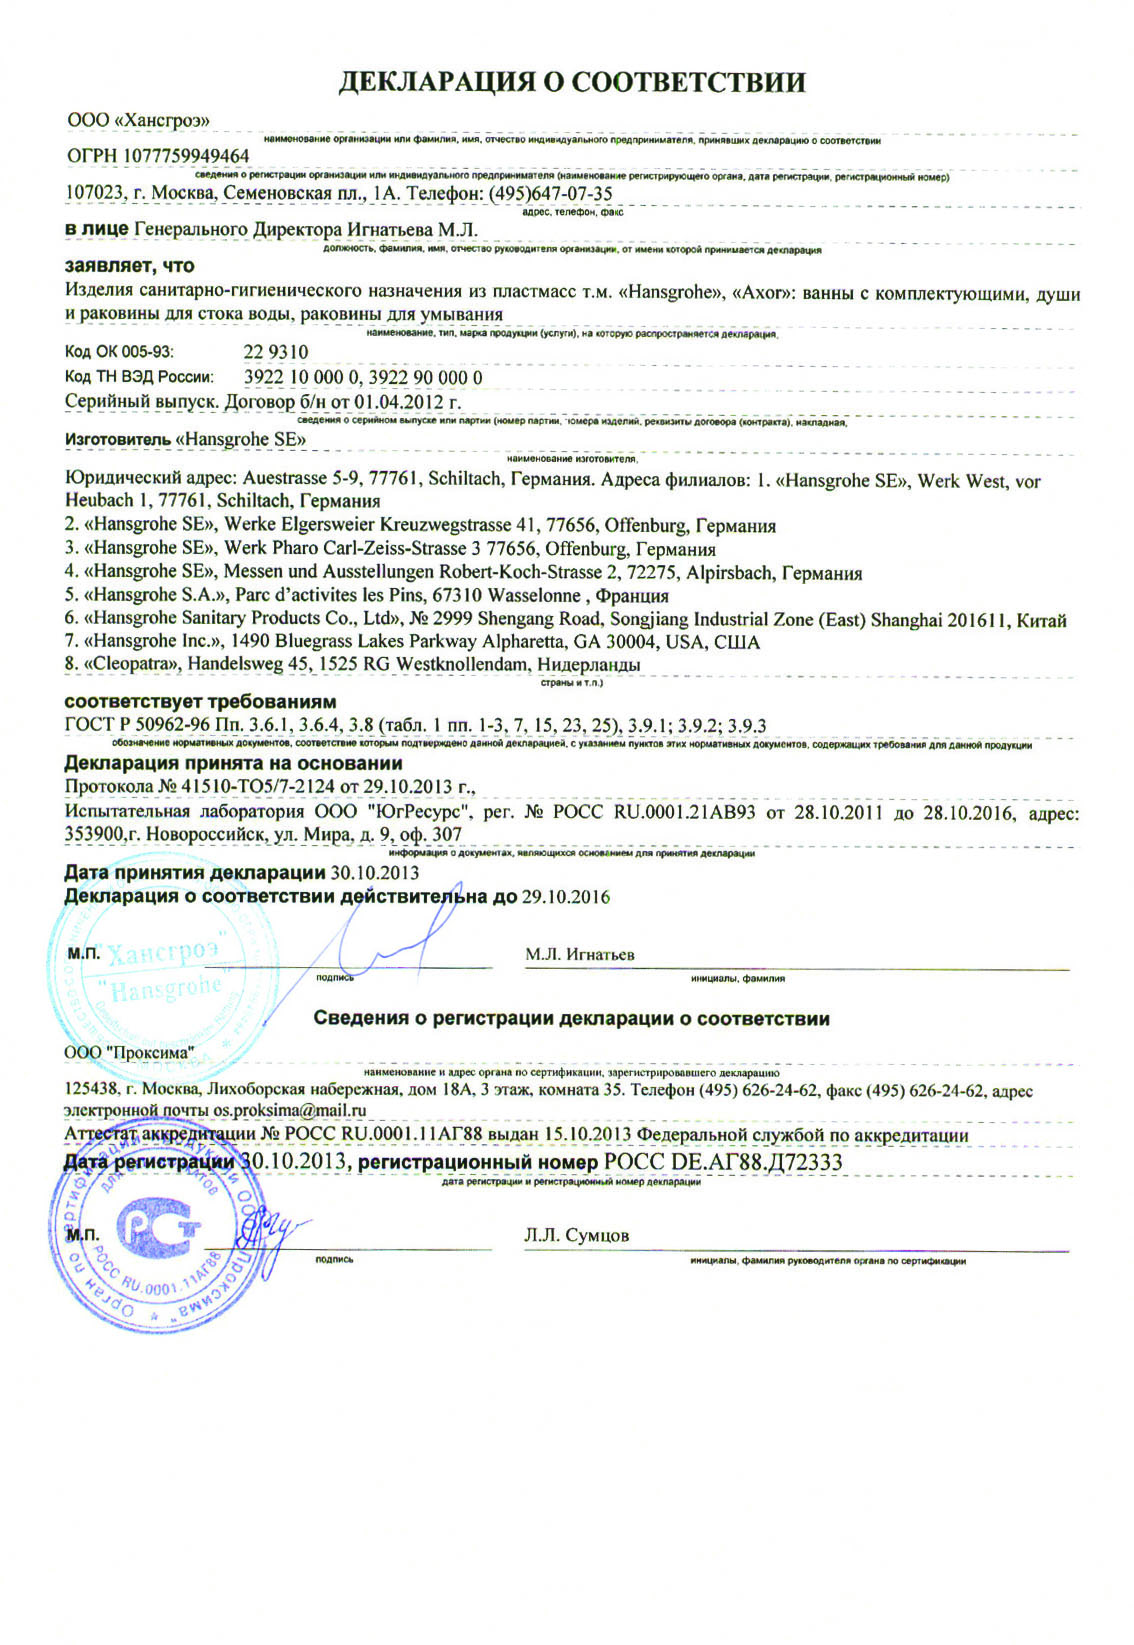 Декларация соответствия ( изделия санитарно-гигиенического назначения из пластмасс т.м Hansgrohe)